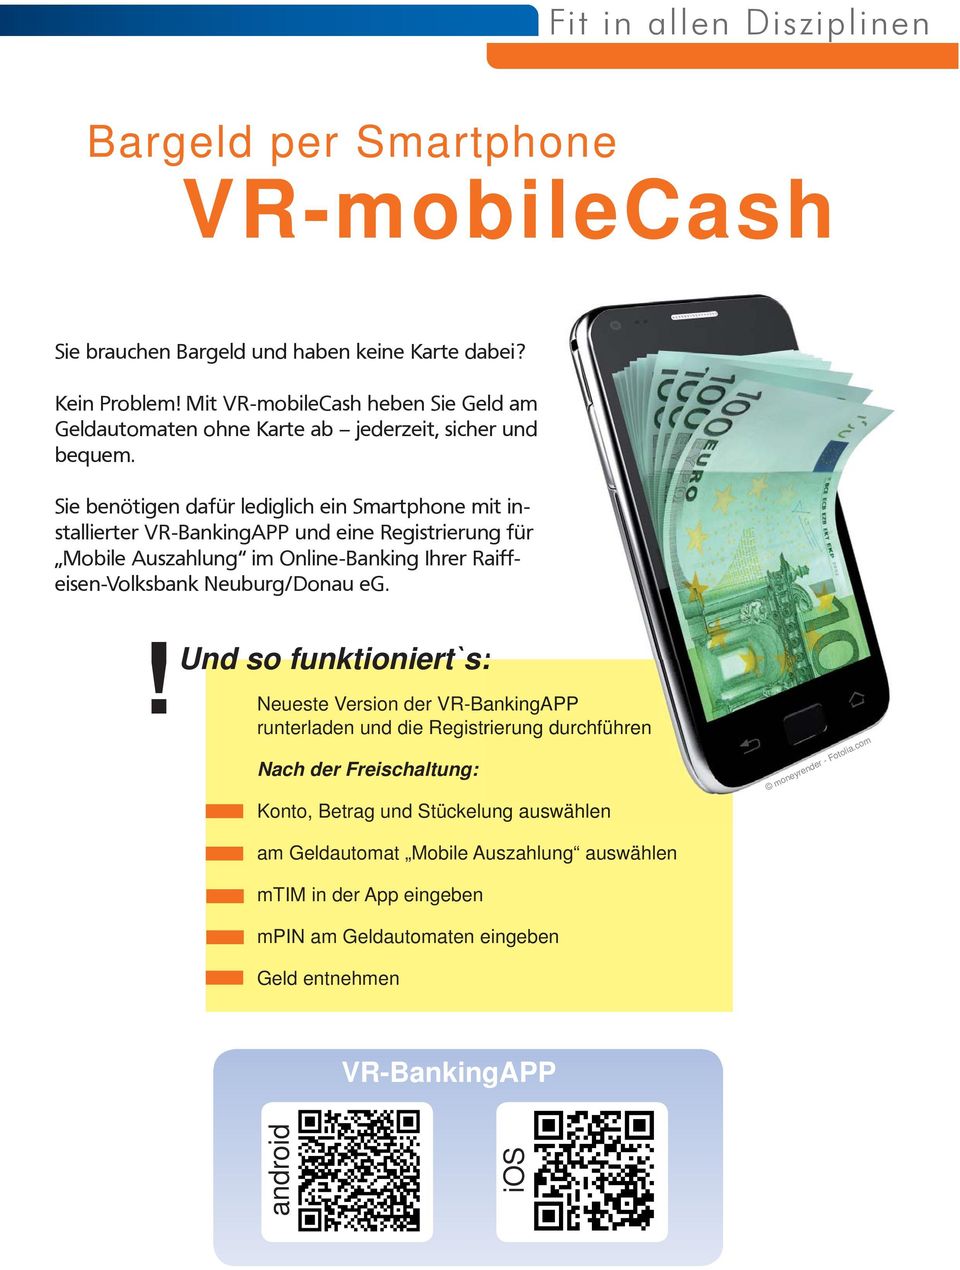 Sie benötigen dafür lediglich ein Smartphone mit installierter VR-BankingAPP und eine Registrierung für Mobile Auszahlung im Online-Banking Ihrer Raiffeisen-Volksbank